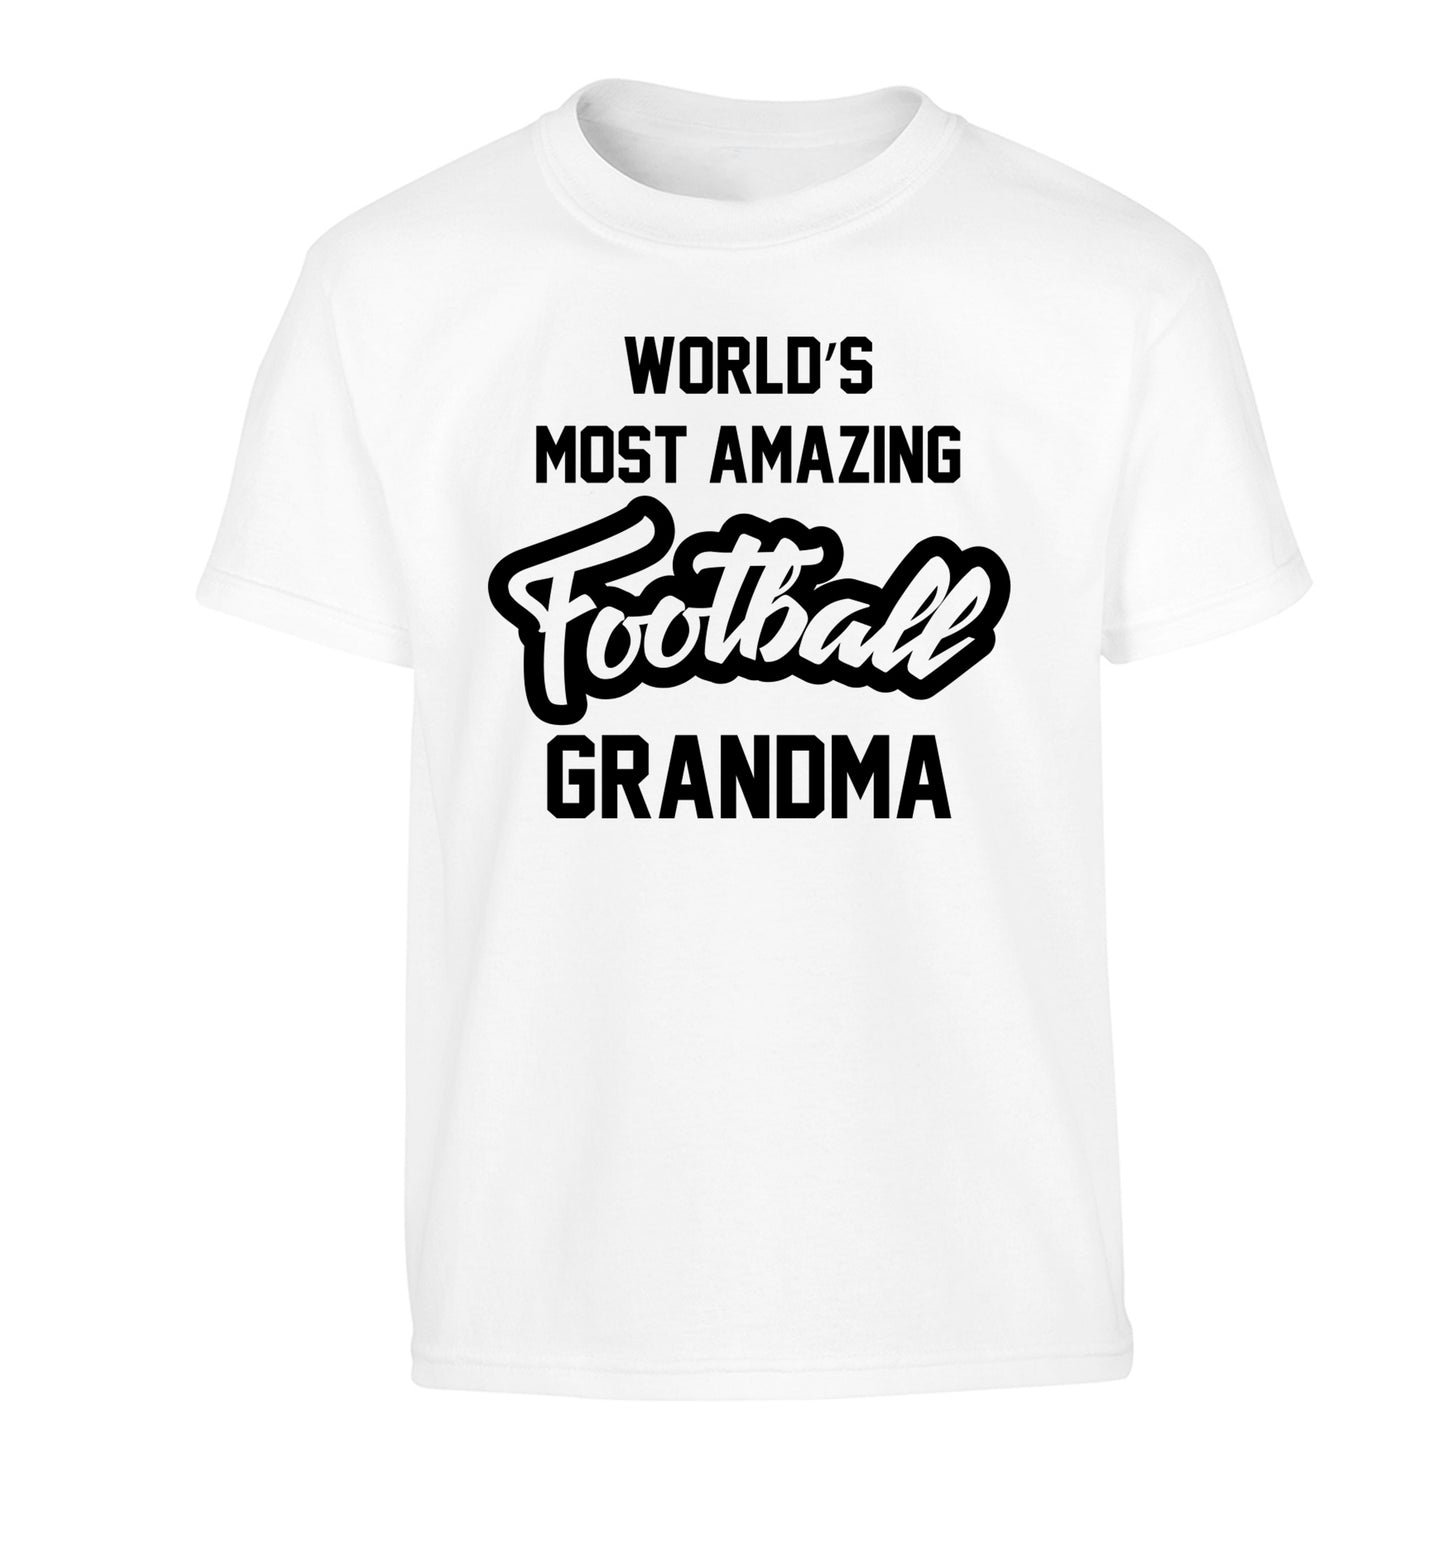 Worlds most amazing football grandma Children's white Tshirt 12-14 Years